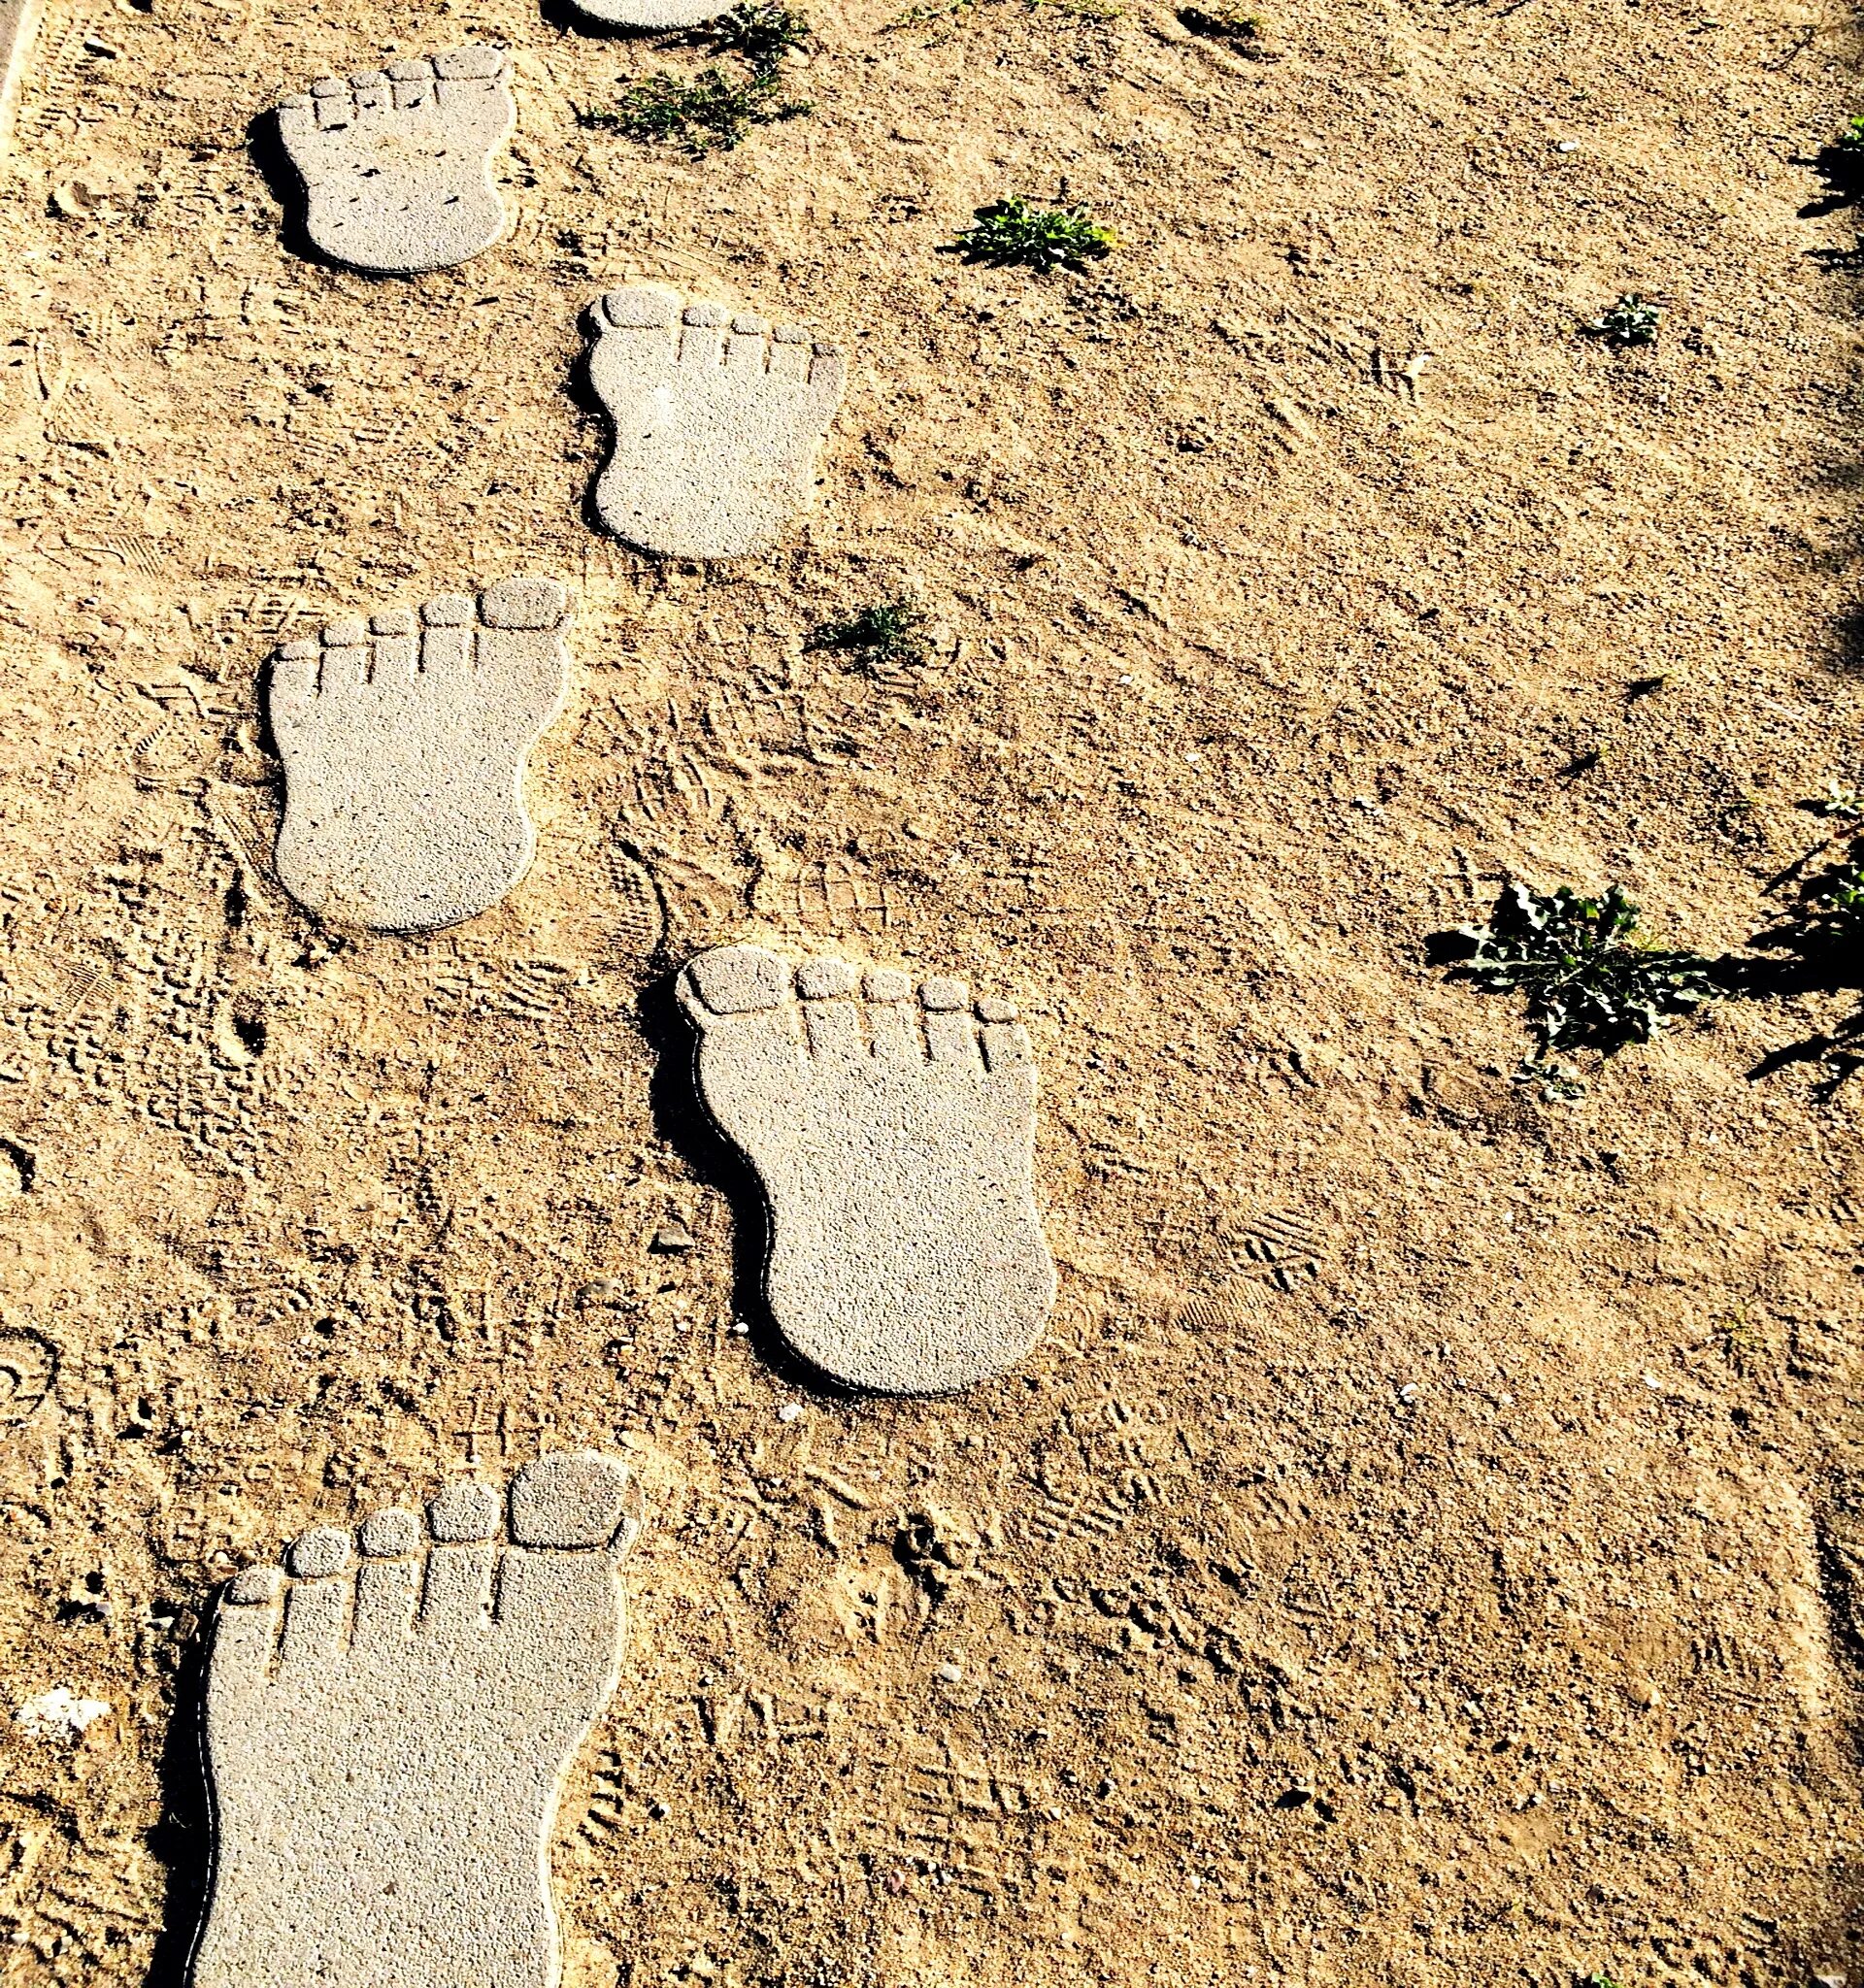 Стертые следы. Отпечатки на камнях. Объемные следы ног. Следы ботинок на песке. Отпечаток ноги на земле.